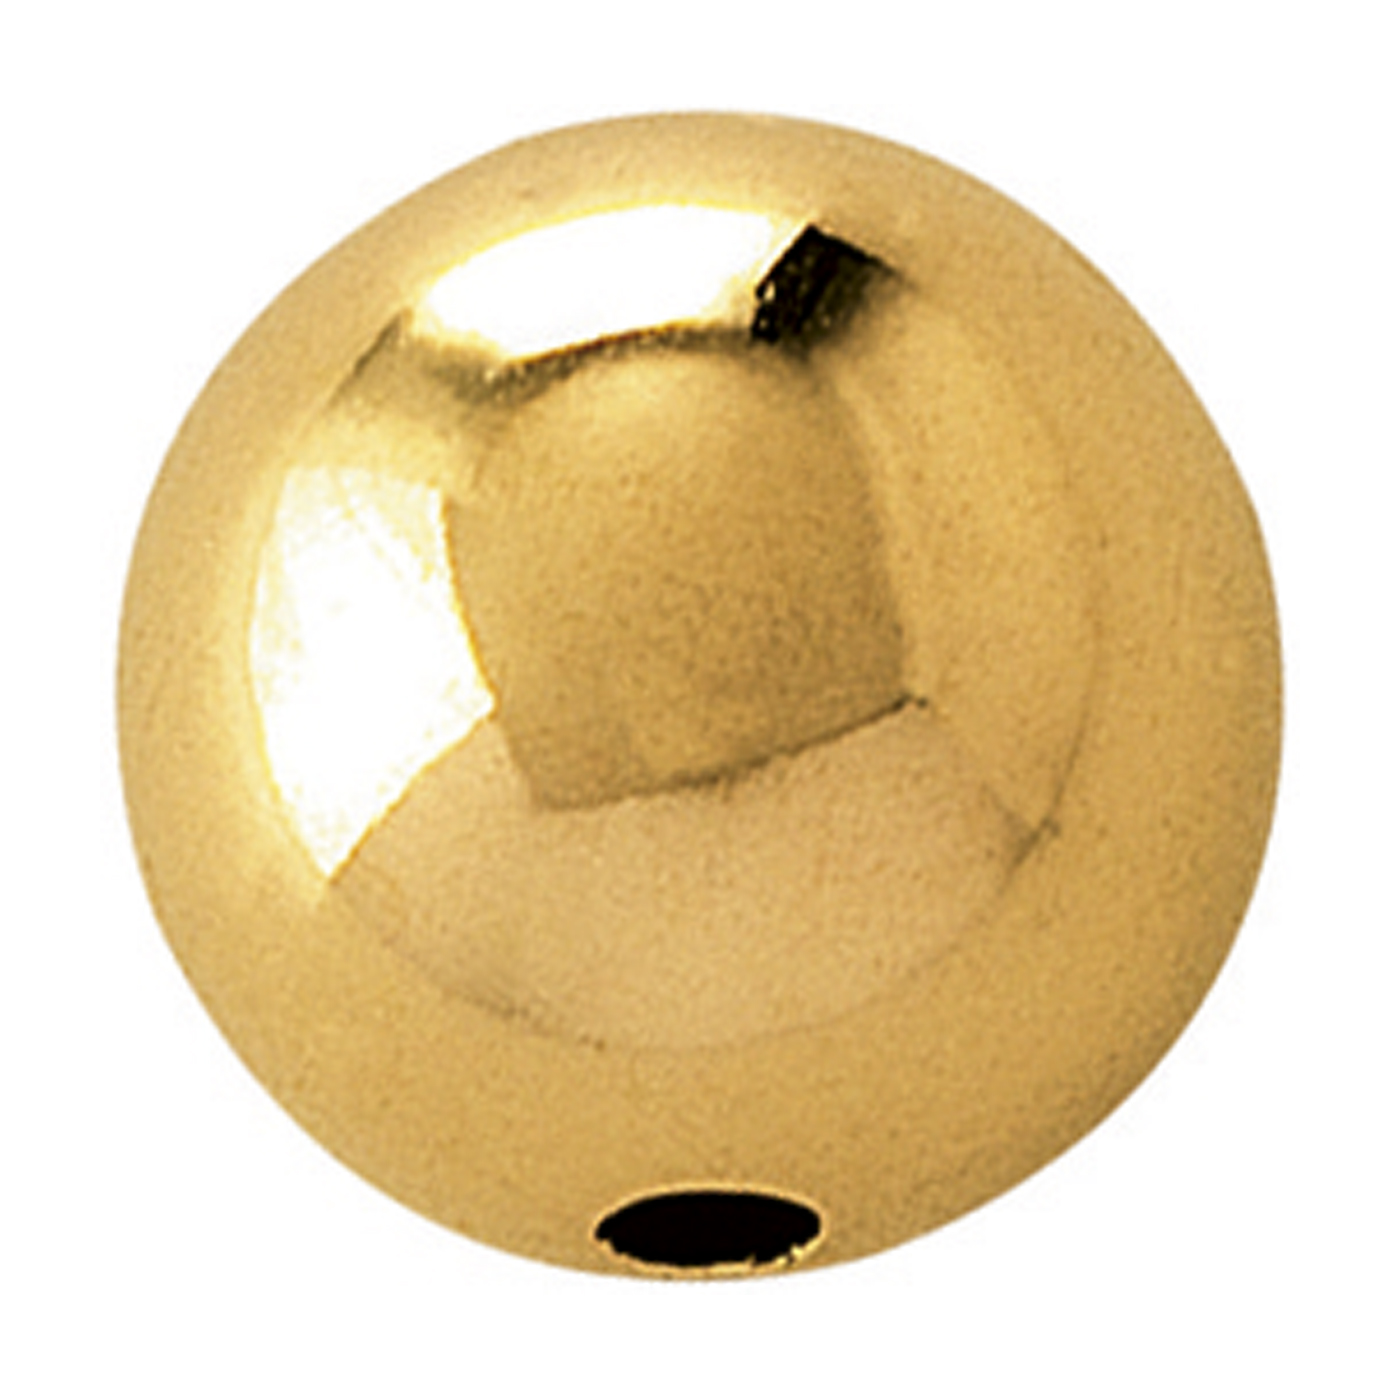 2-Hole Ball, 750G Polished, ø 6 mm - 1 piece